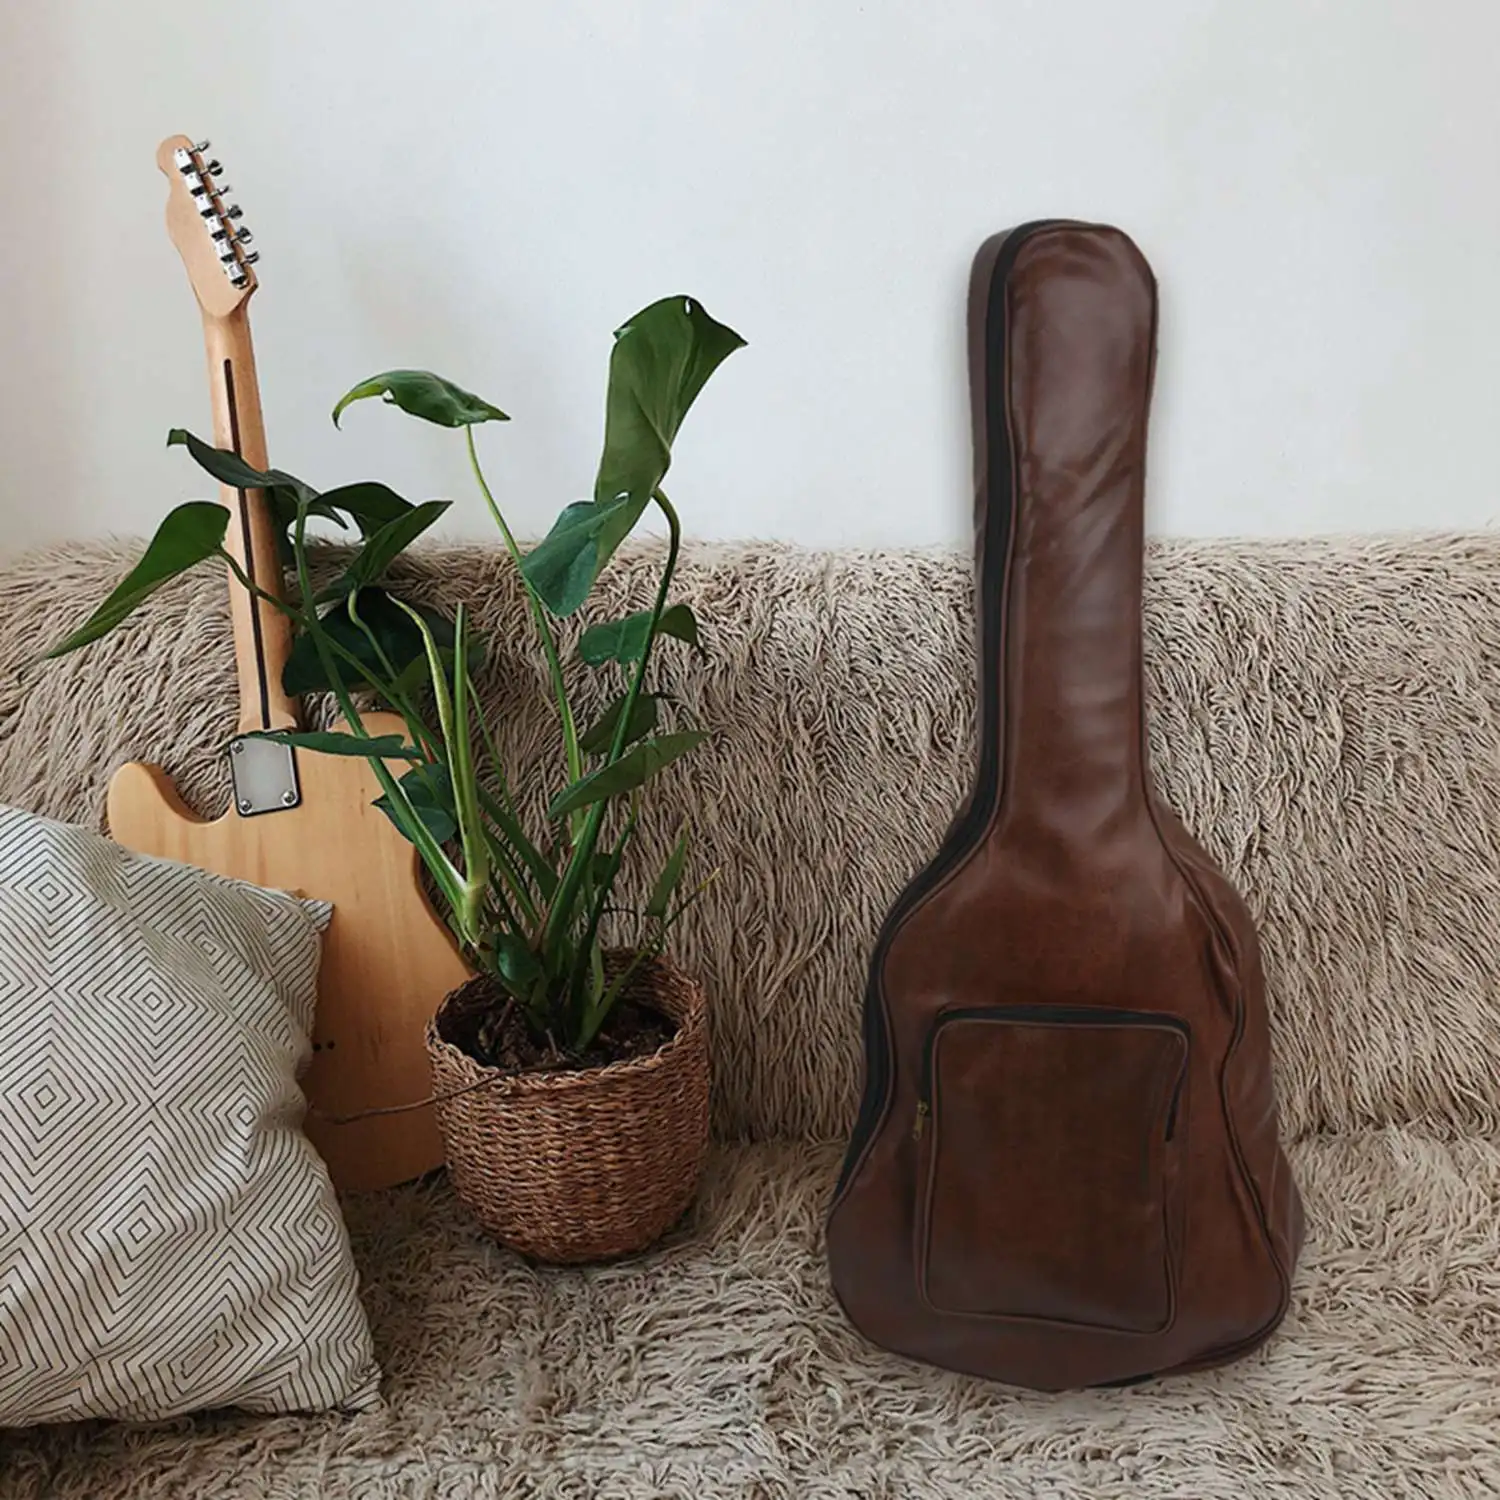 40-дюймовый 41-дюймовый водонепроницаемый рюкзак для гитары из искусственной кожи, утолщенный мягкий чехол для гитары, концертная сумка для 40/41 дюймов коричневого цвета 2